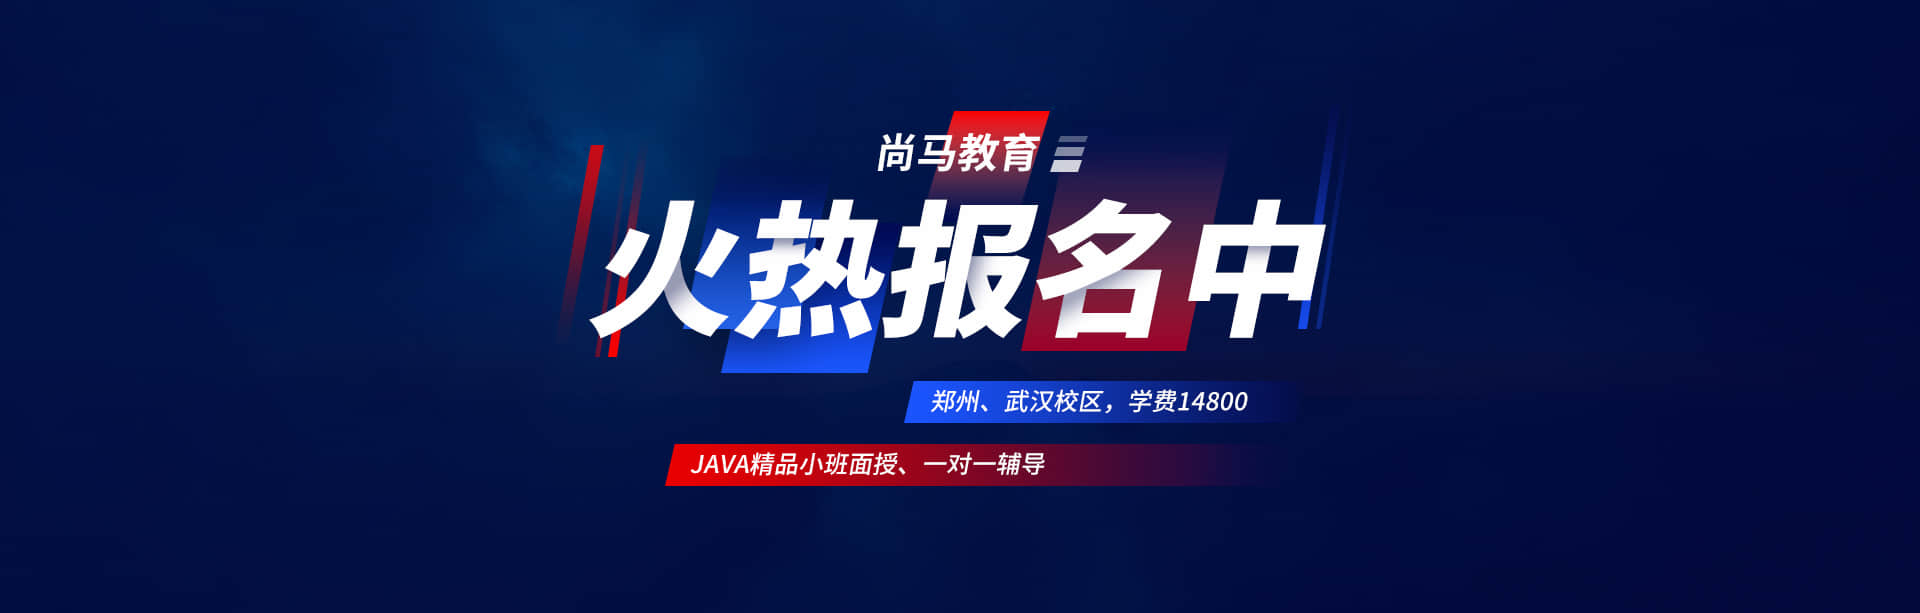 Java培训机构 - 尚马教育培训学校官方网站